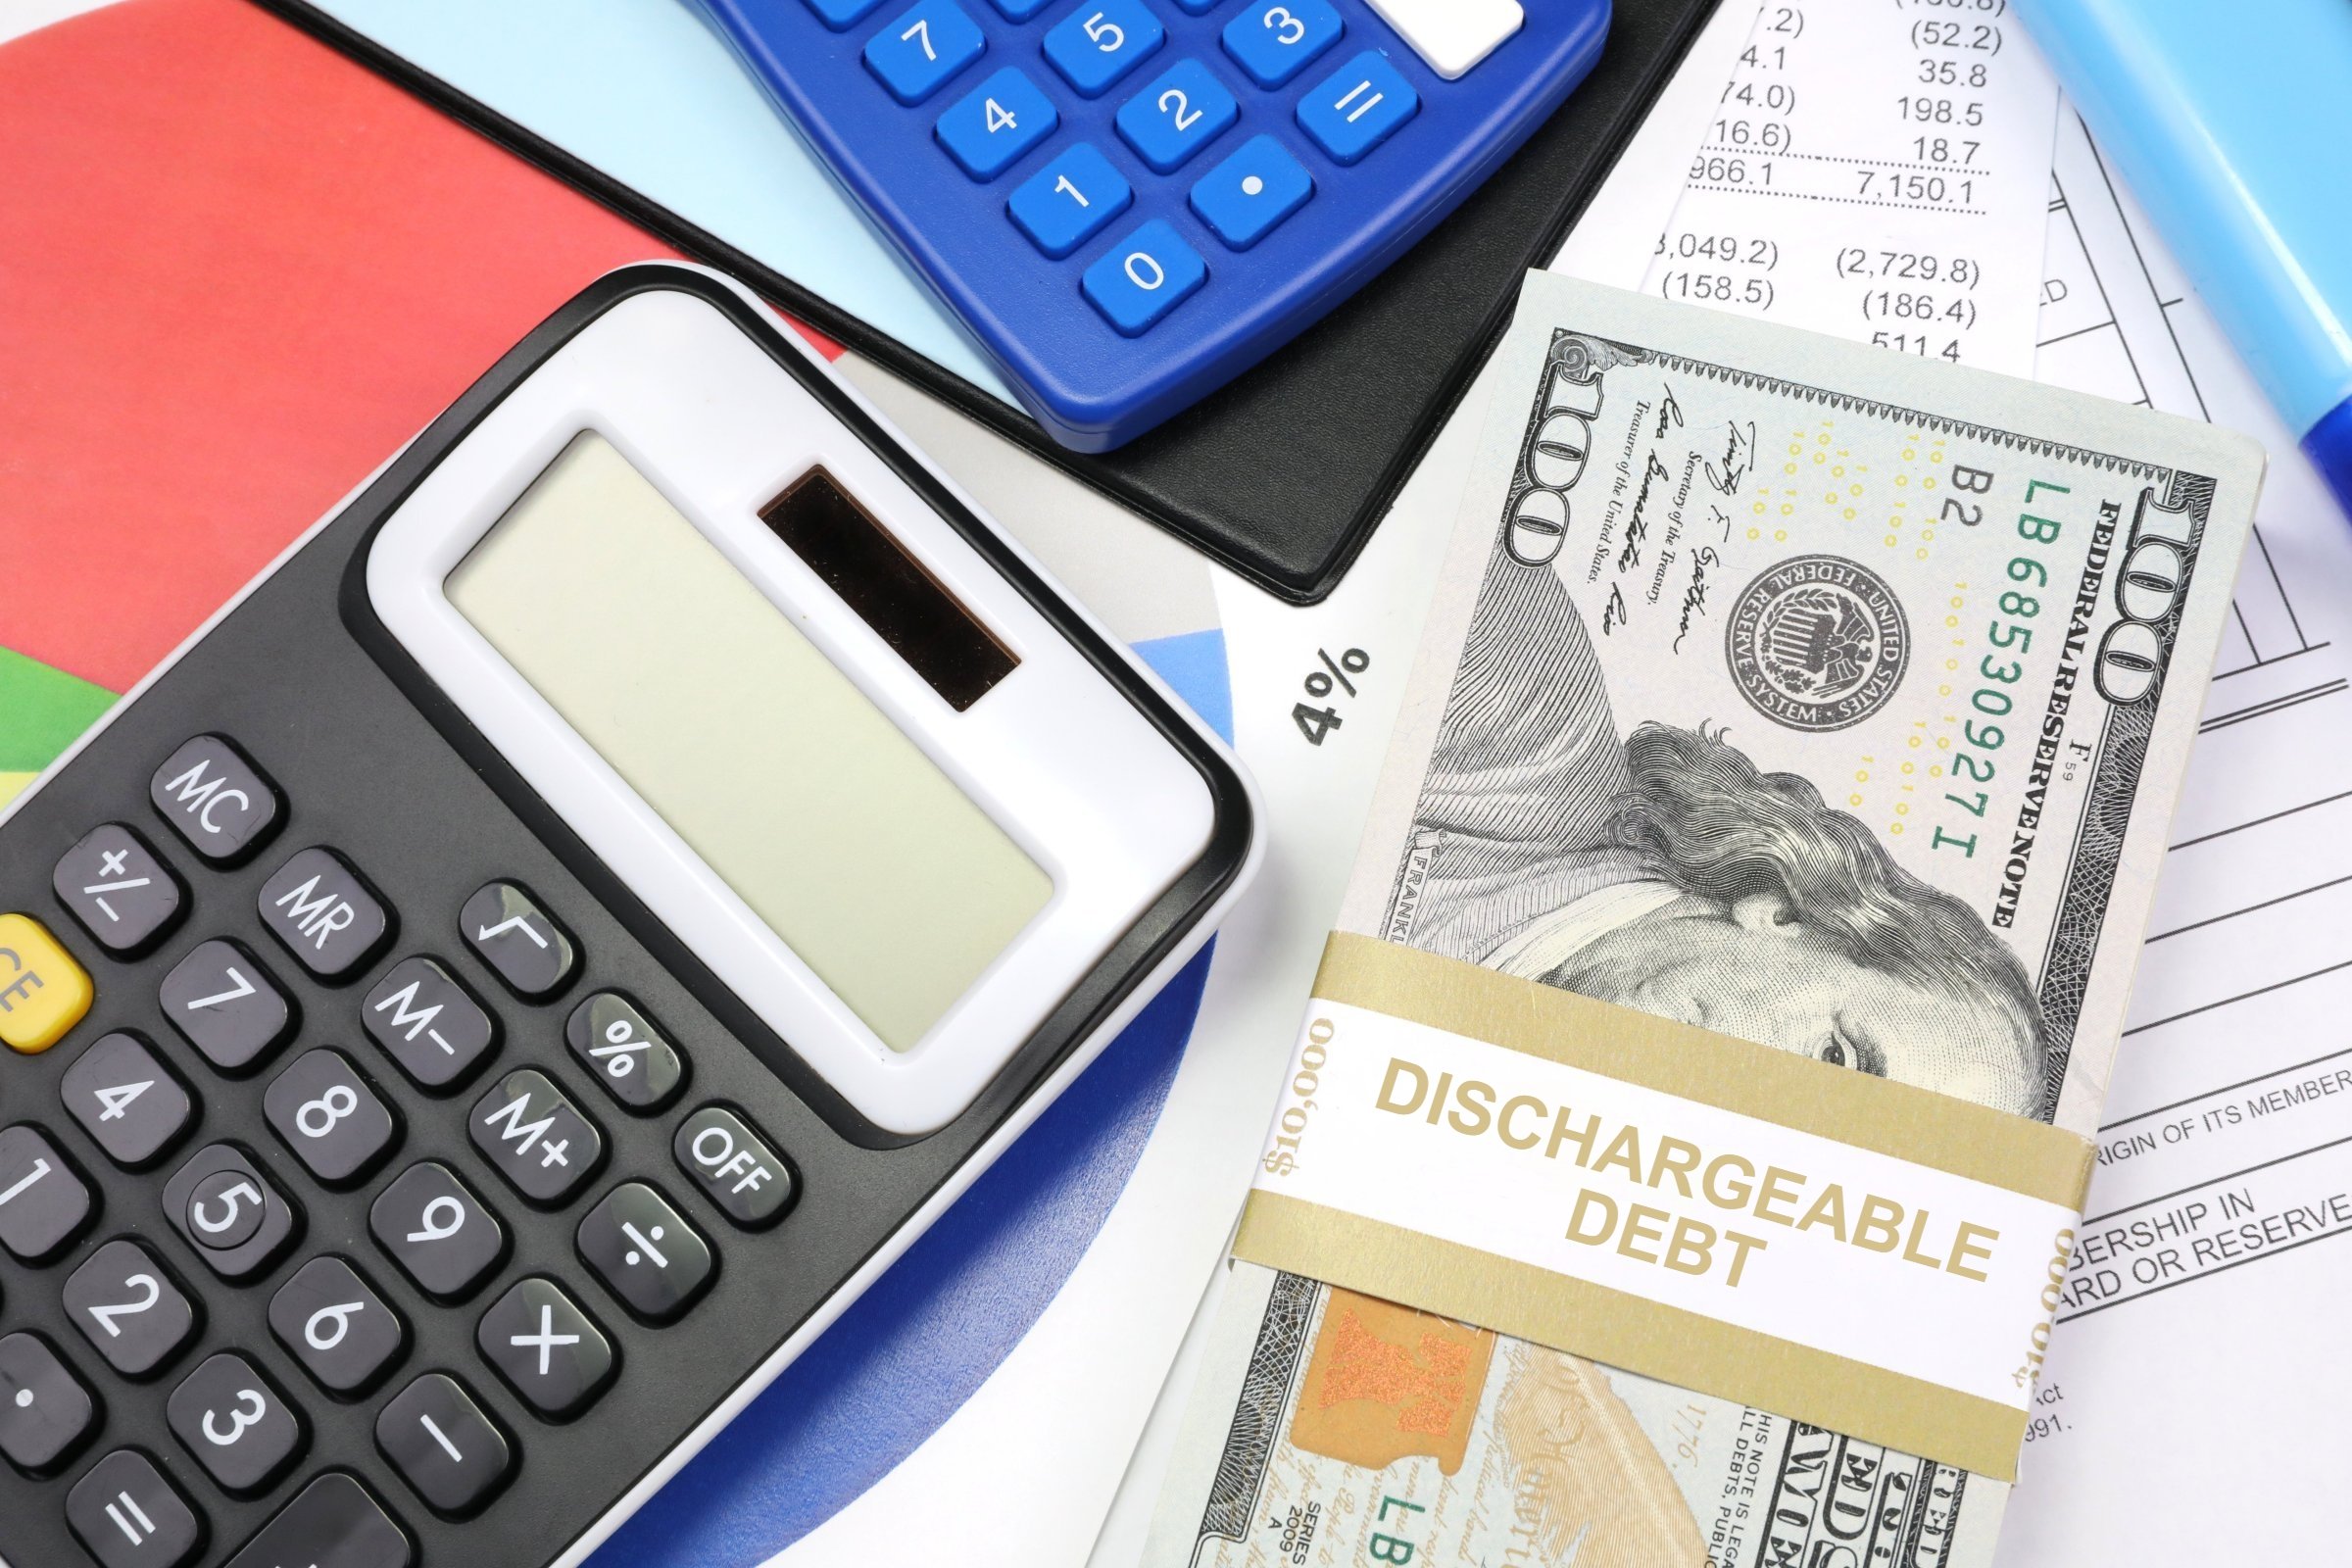 Dischargeable Debt